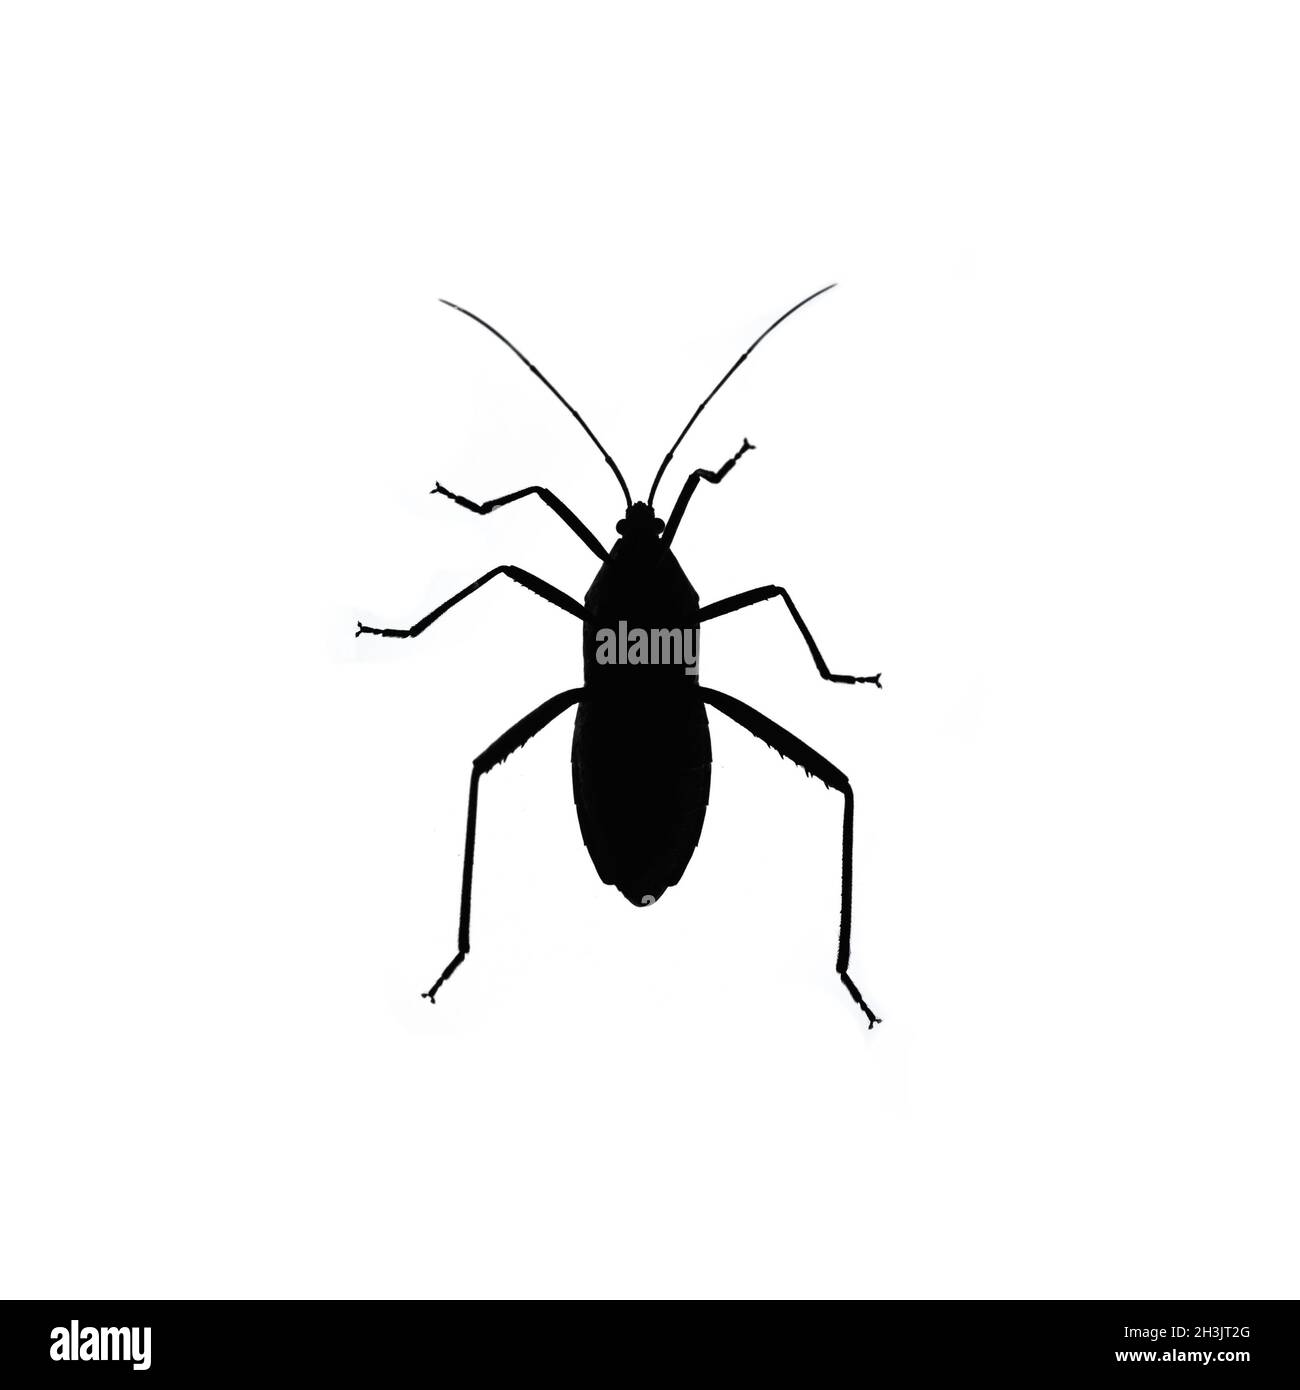 Black bug isolated on white background Stock Photo